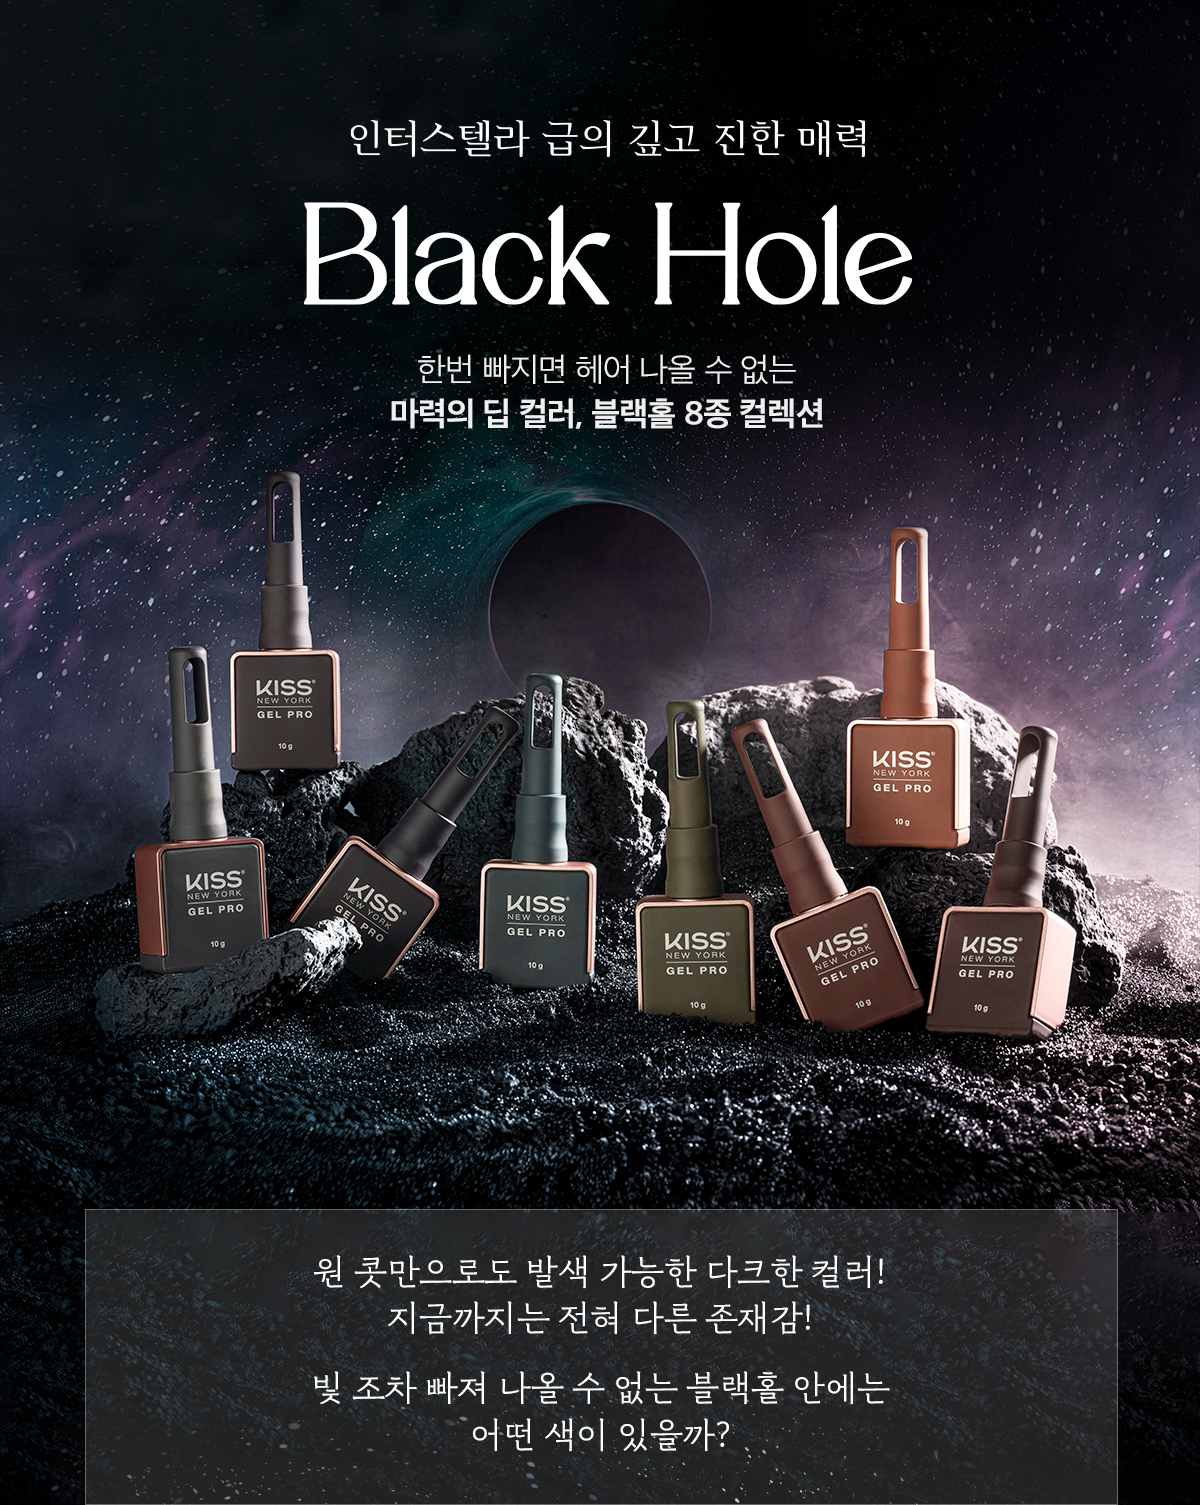 blackhole_web_01_160916.jpg